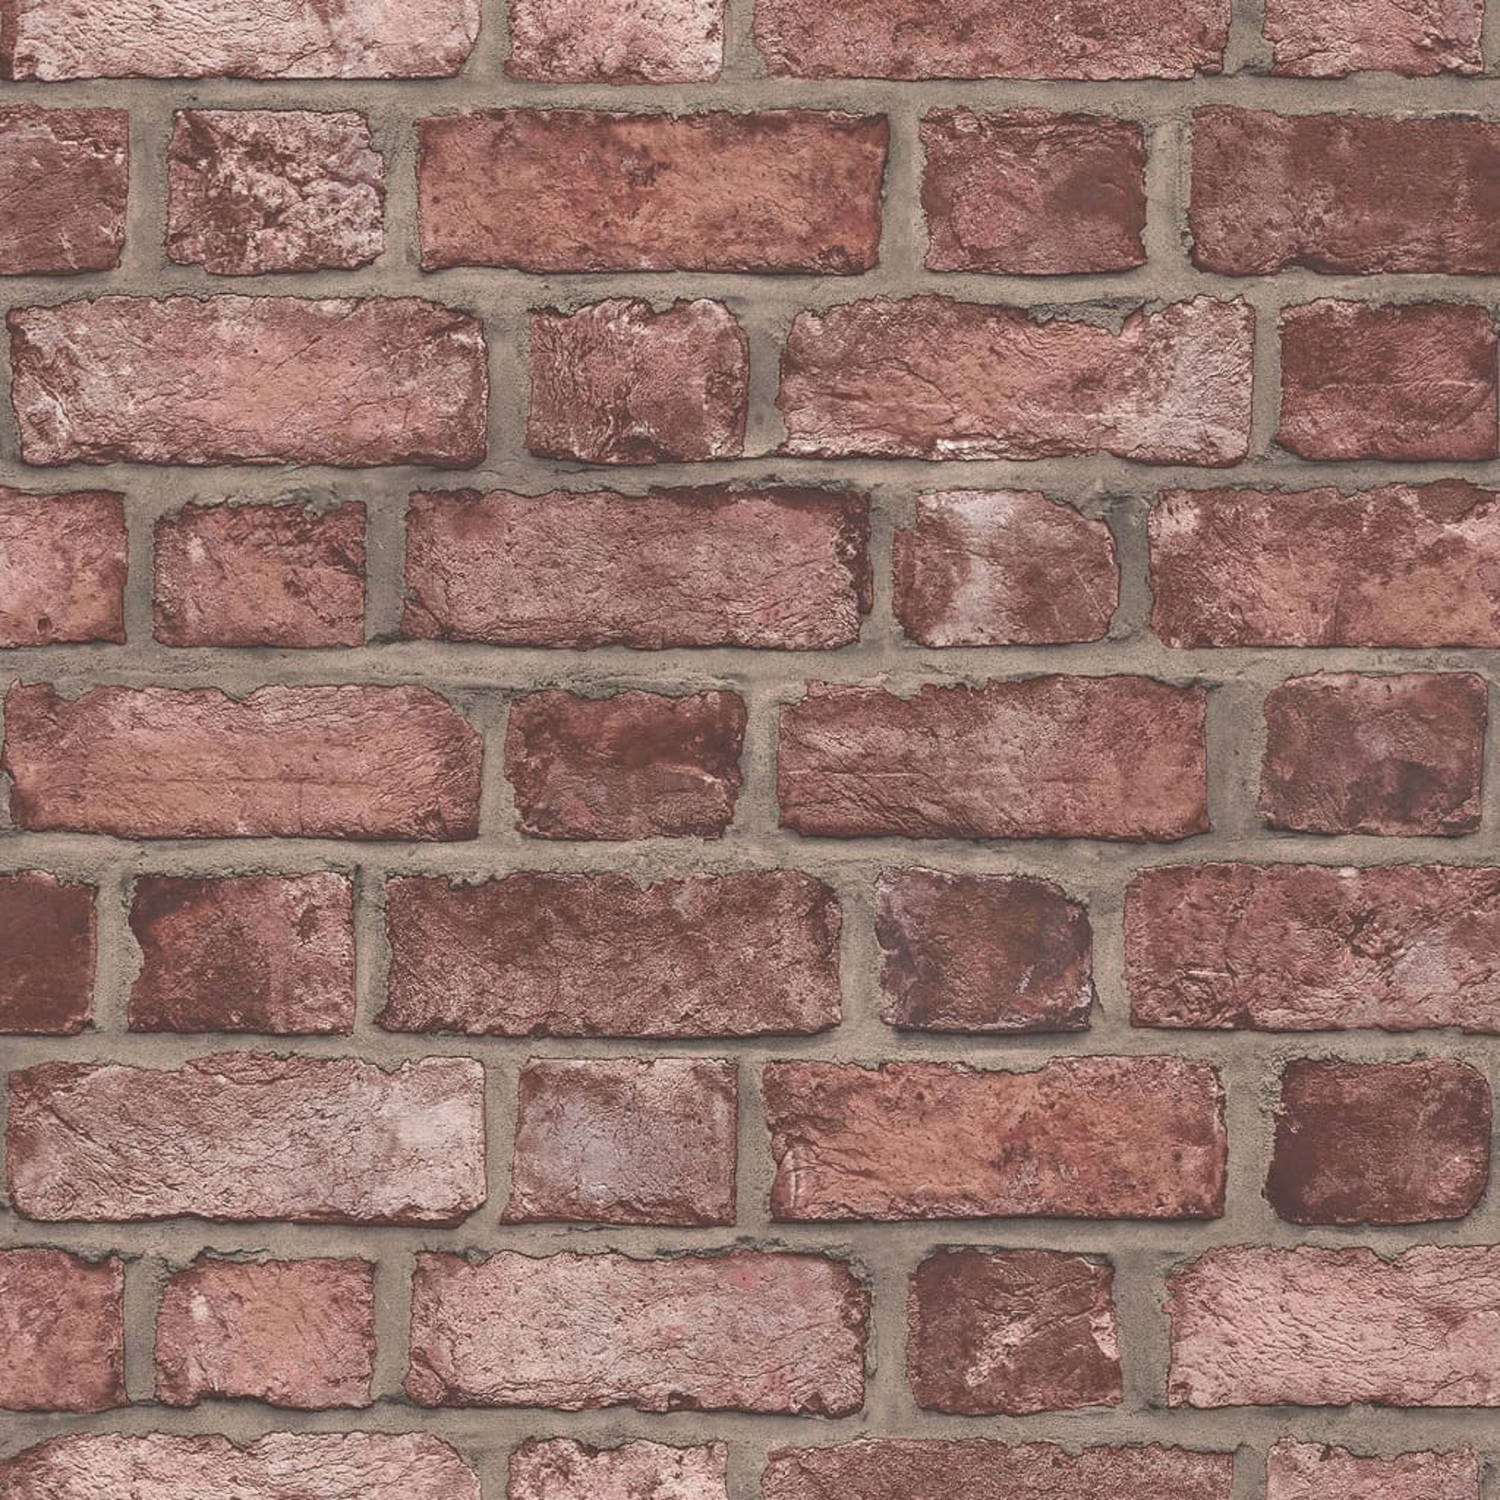 Homestyle Behang Brick Wall rood